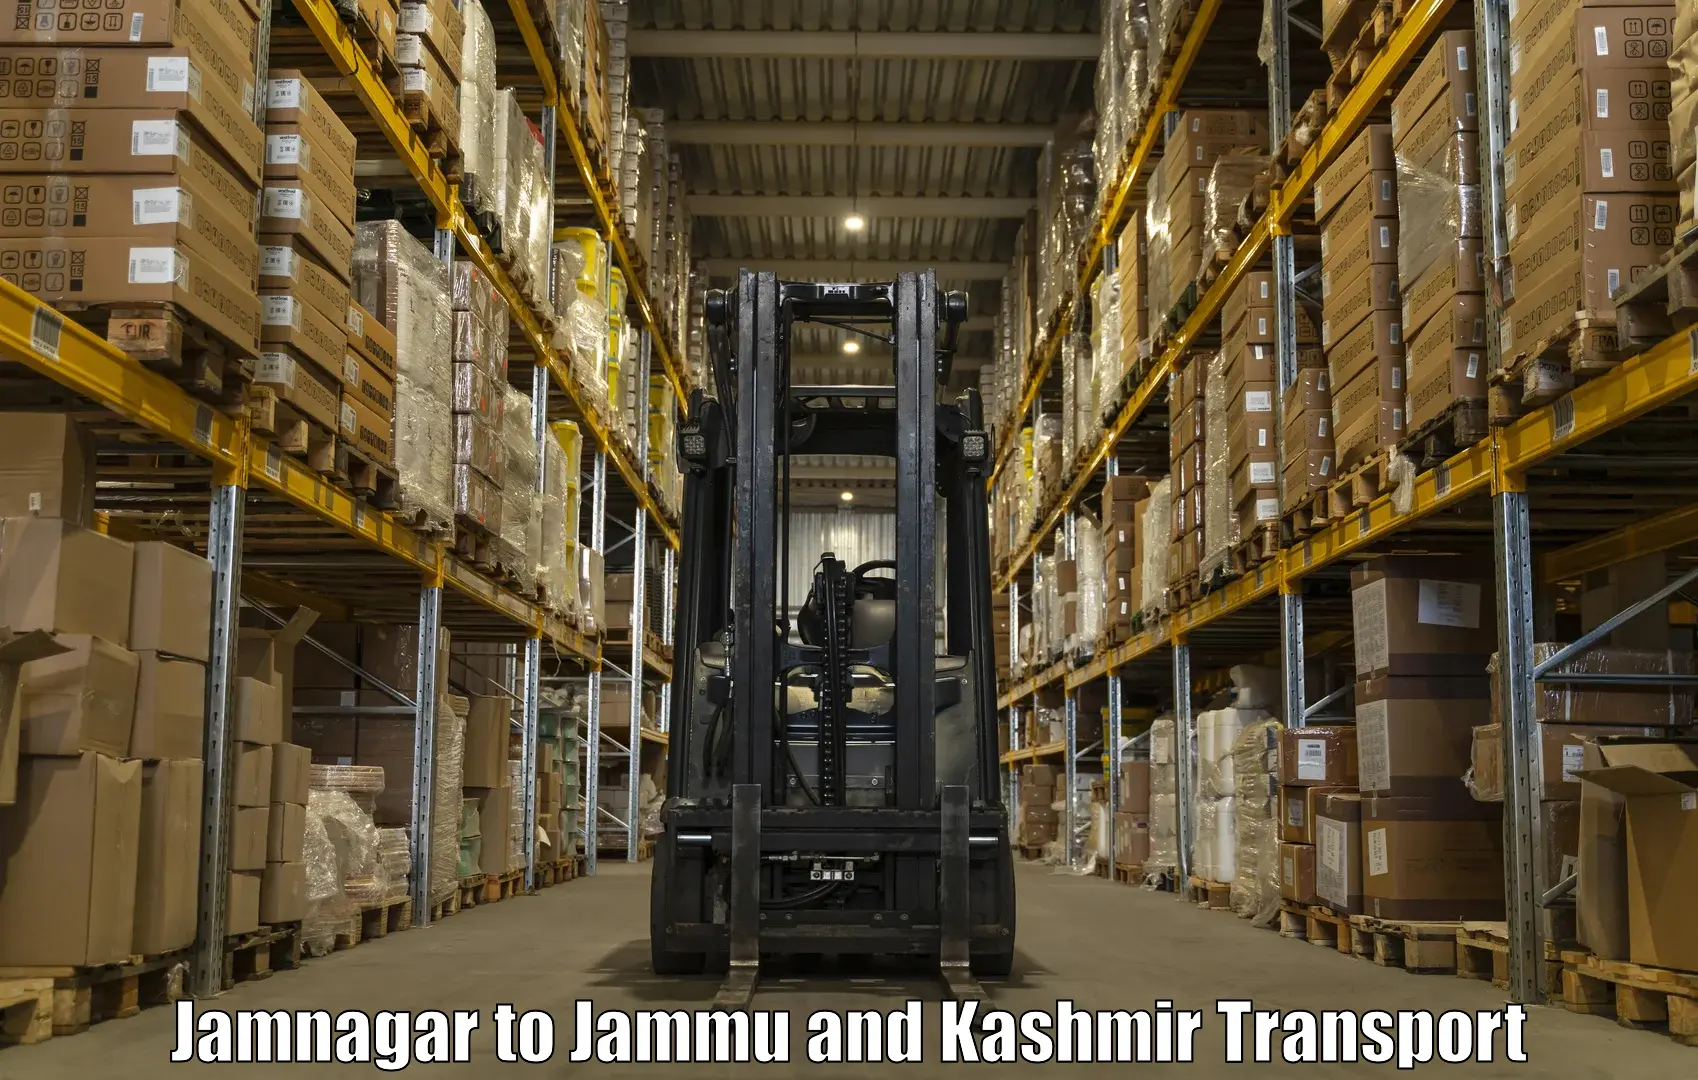 Truck transport companies in India Jamnagar to Jammu and Kashmir